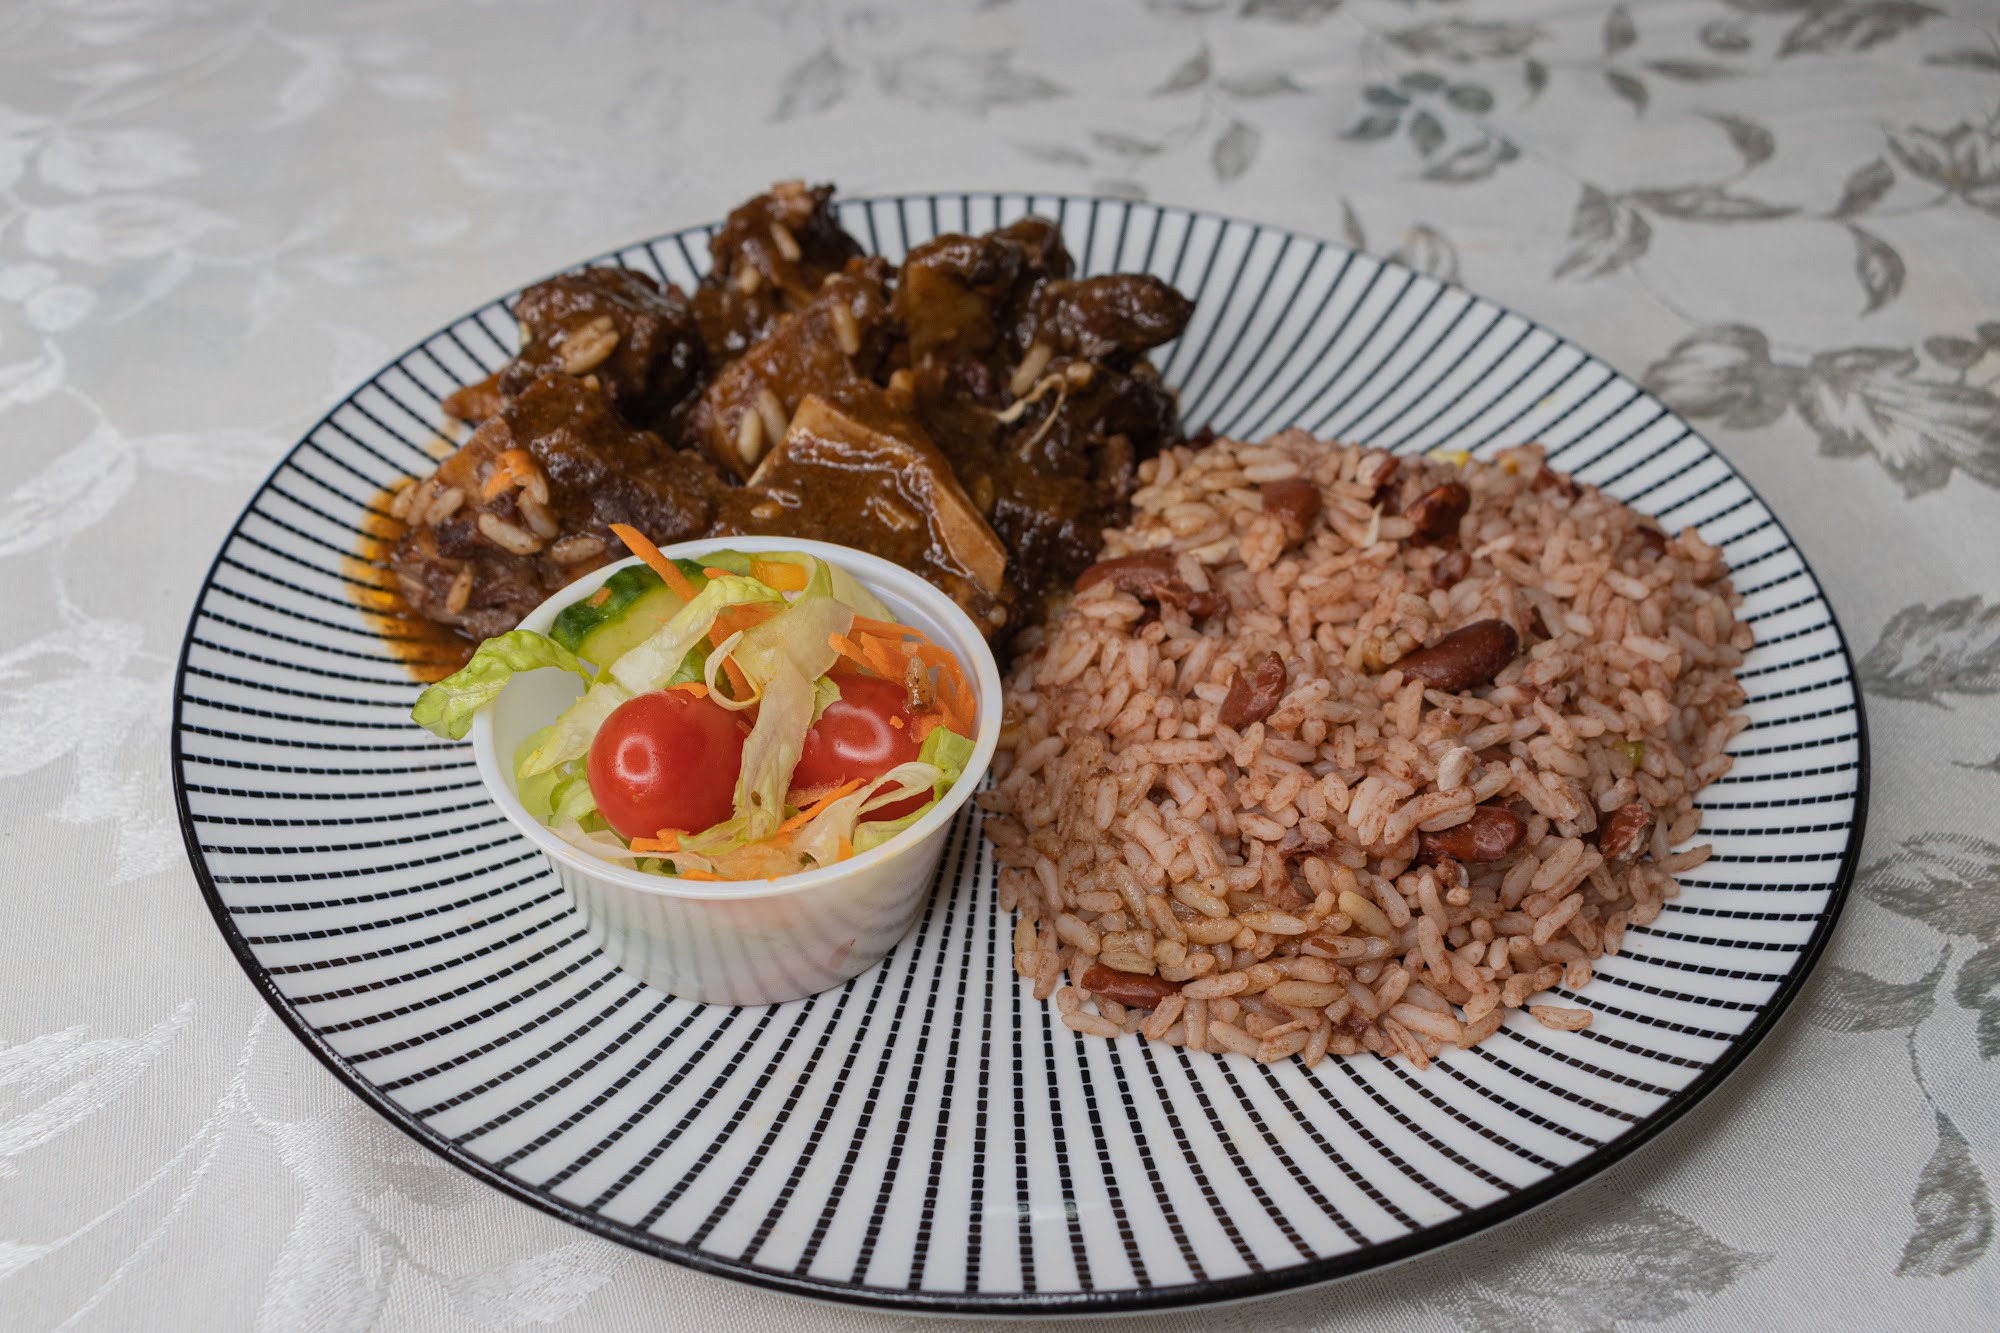 Taste of Jamaican's Kitchen